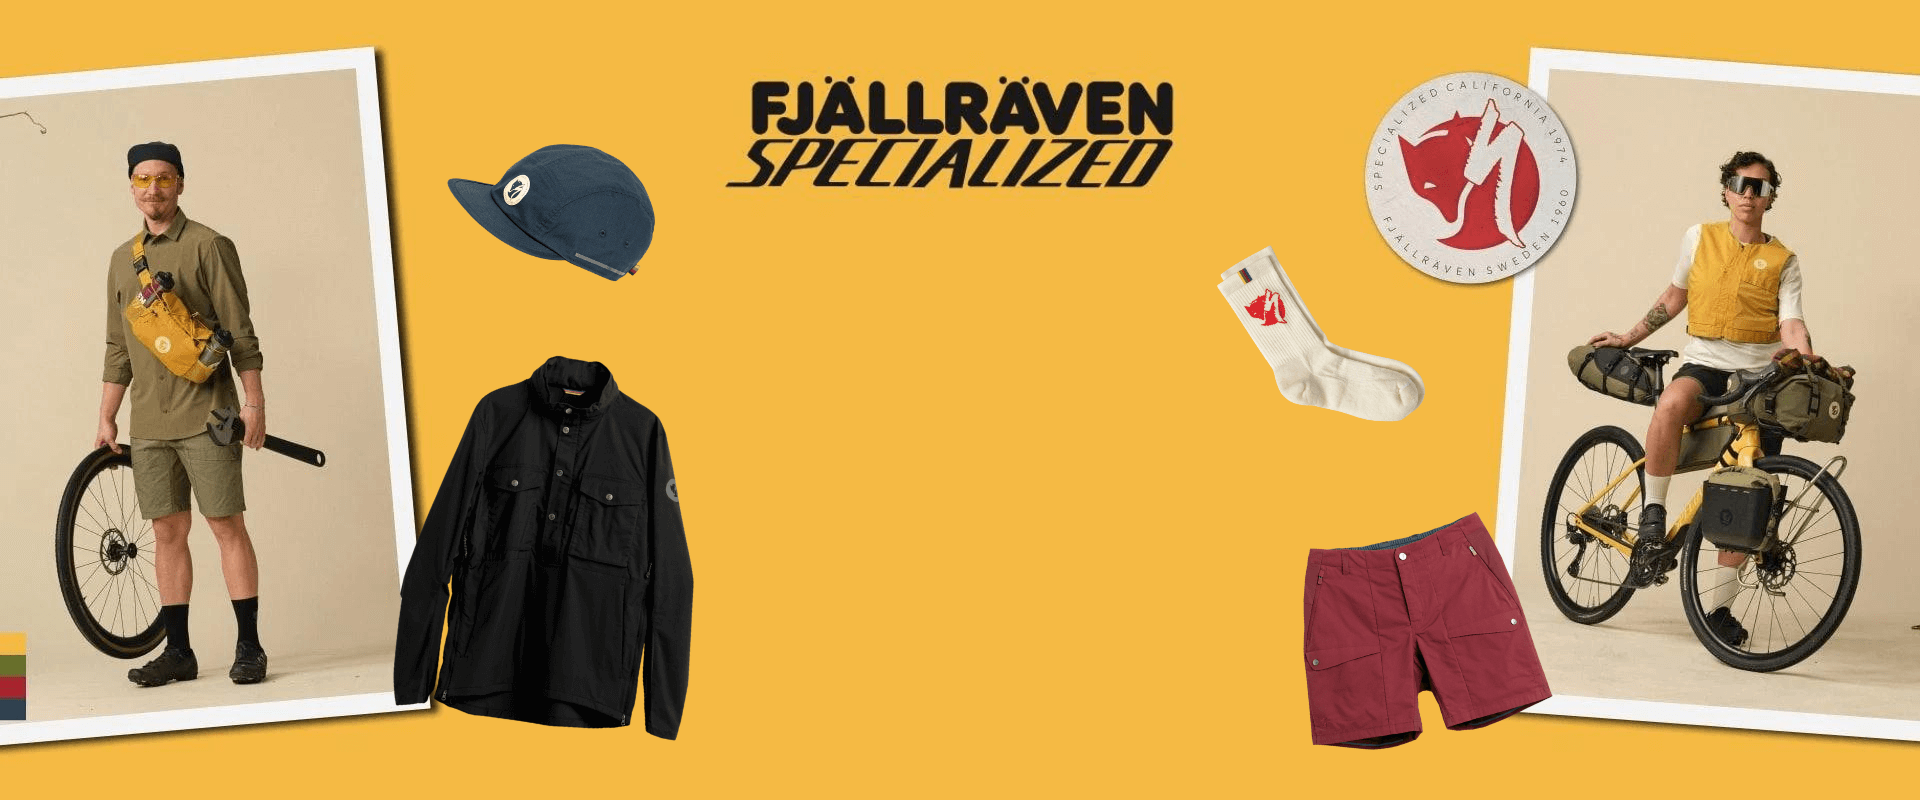 Fjällräven/Specialized